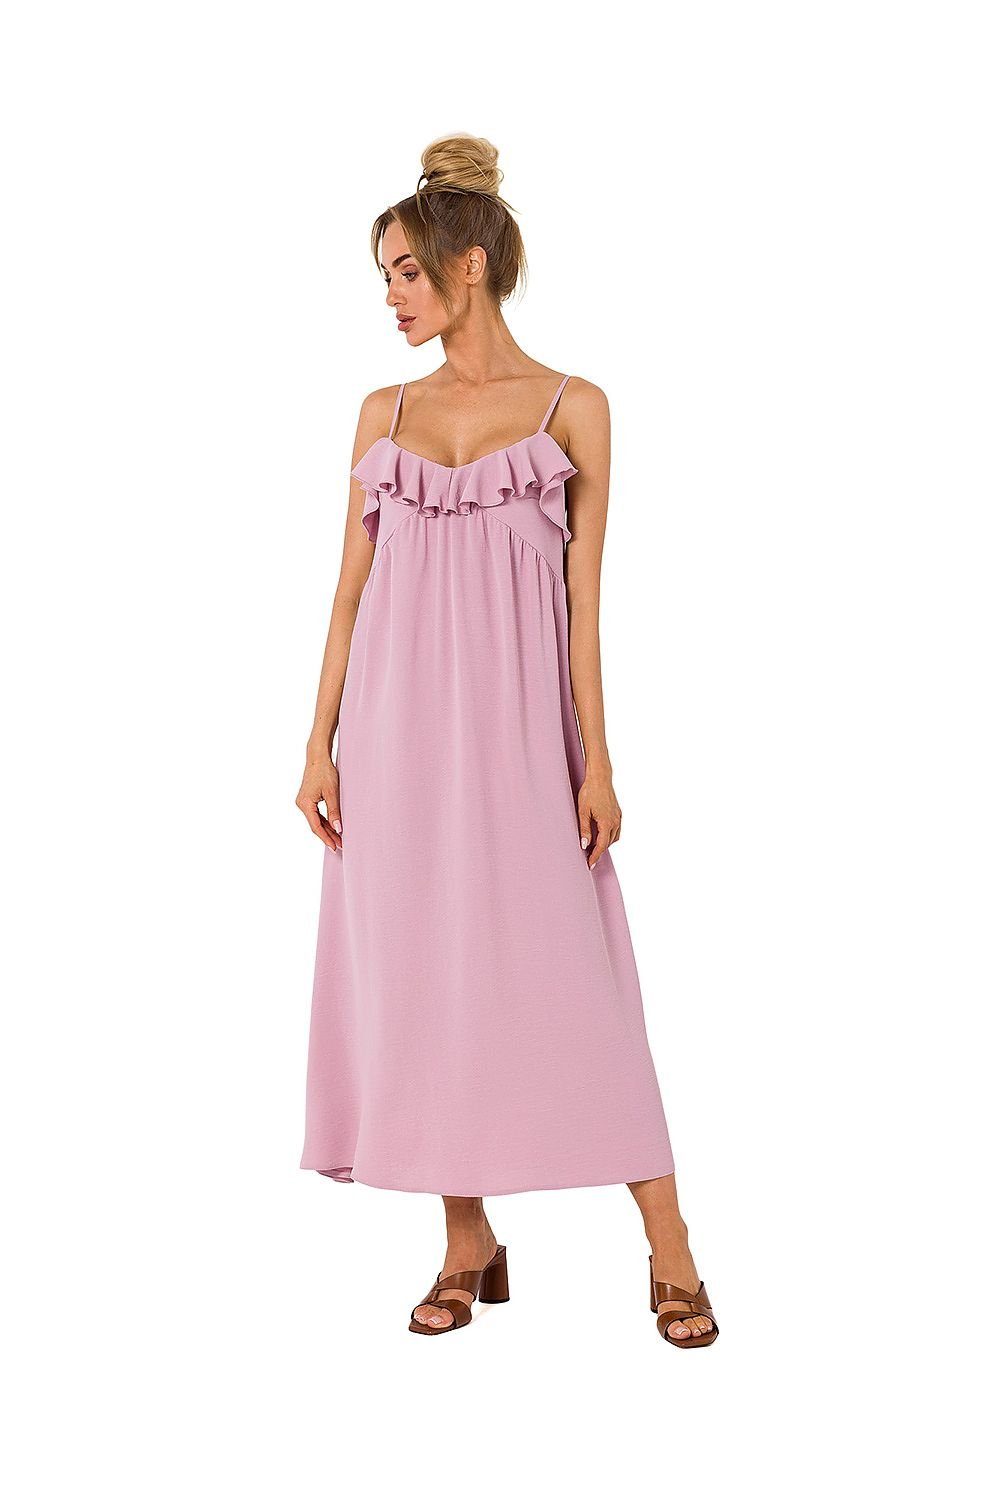 TEEK  Ruffled Top Long Tank Dress DRESS TEEK MH pink L 